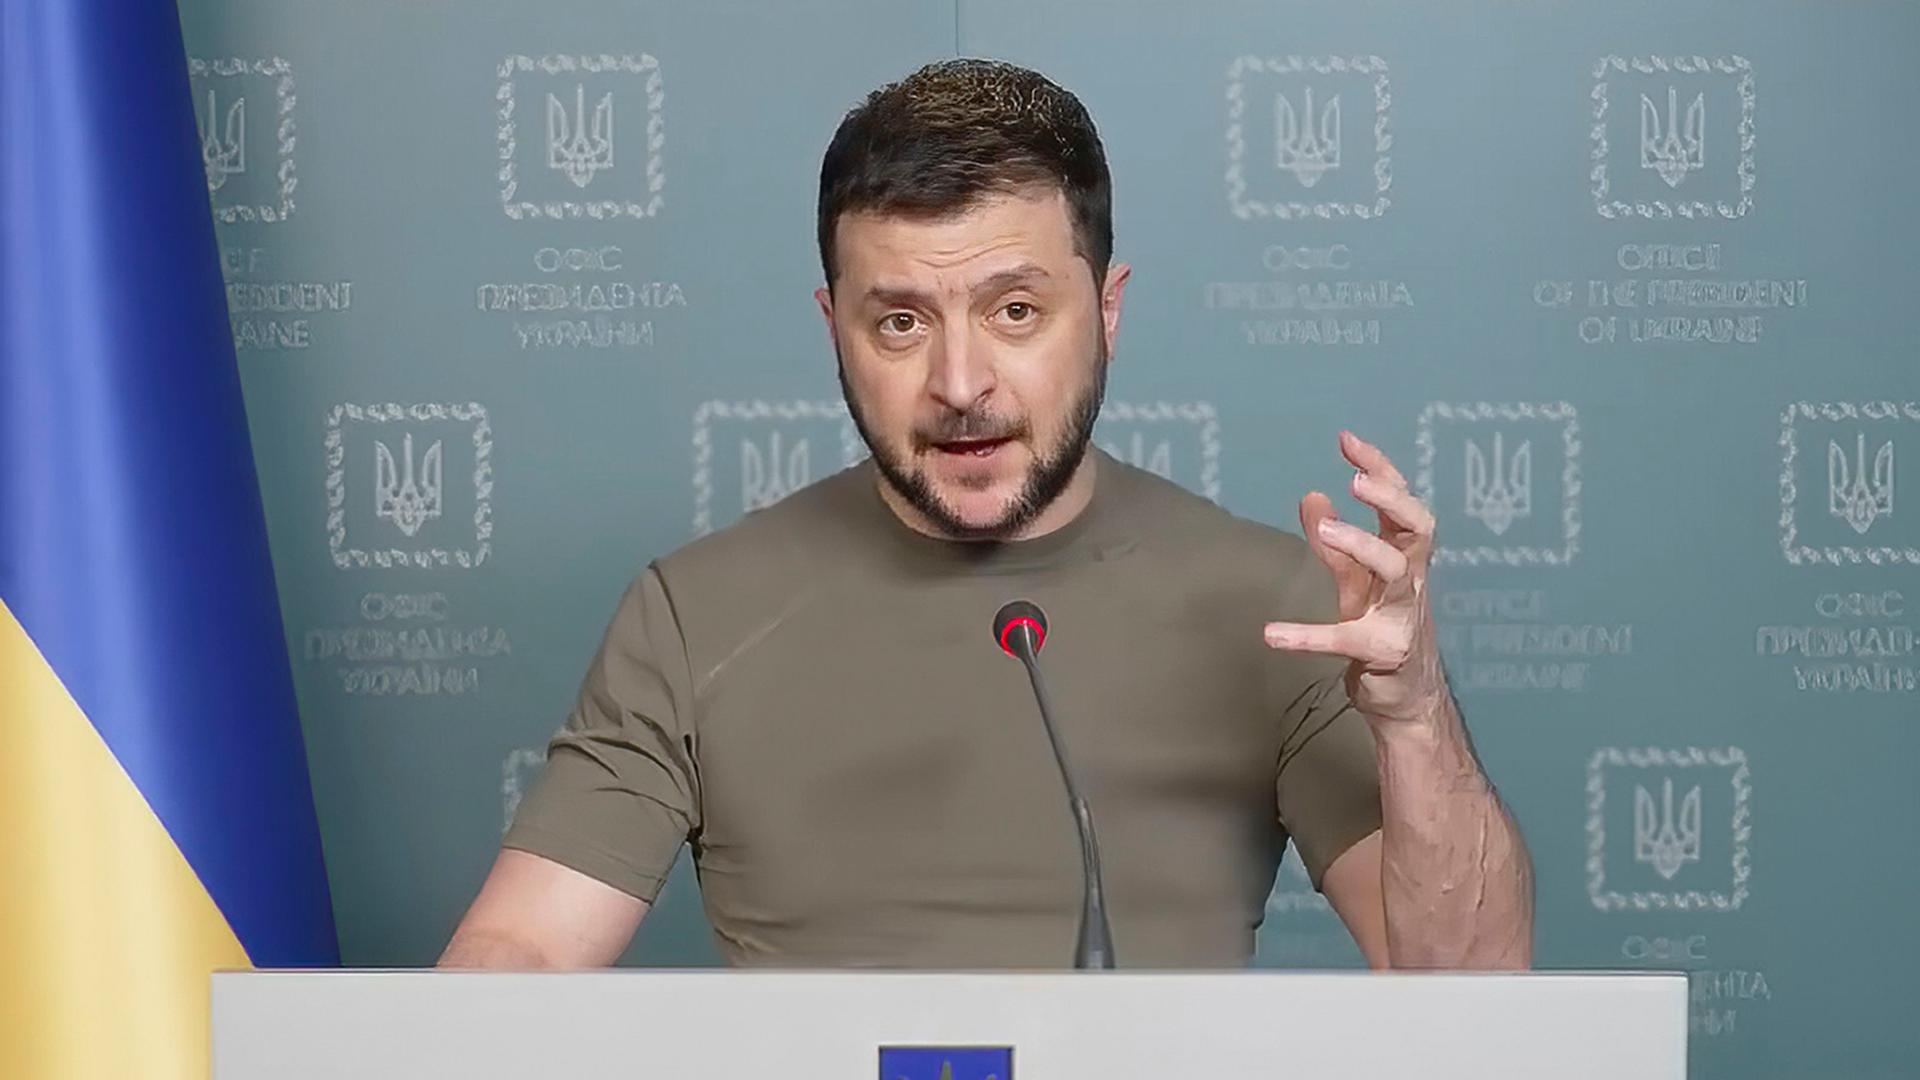 Der ukrainische Präsident Selenskyj steht hinter einem Rednerpult, schaut in die Kamera und spricht in ein Mikrofon. Mit einer Hand gestikuliert er.